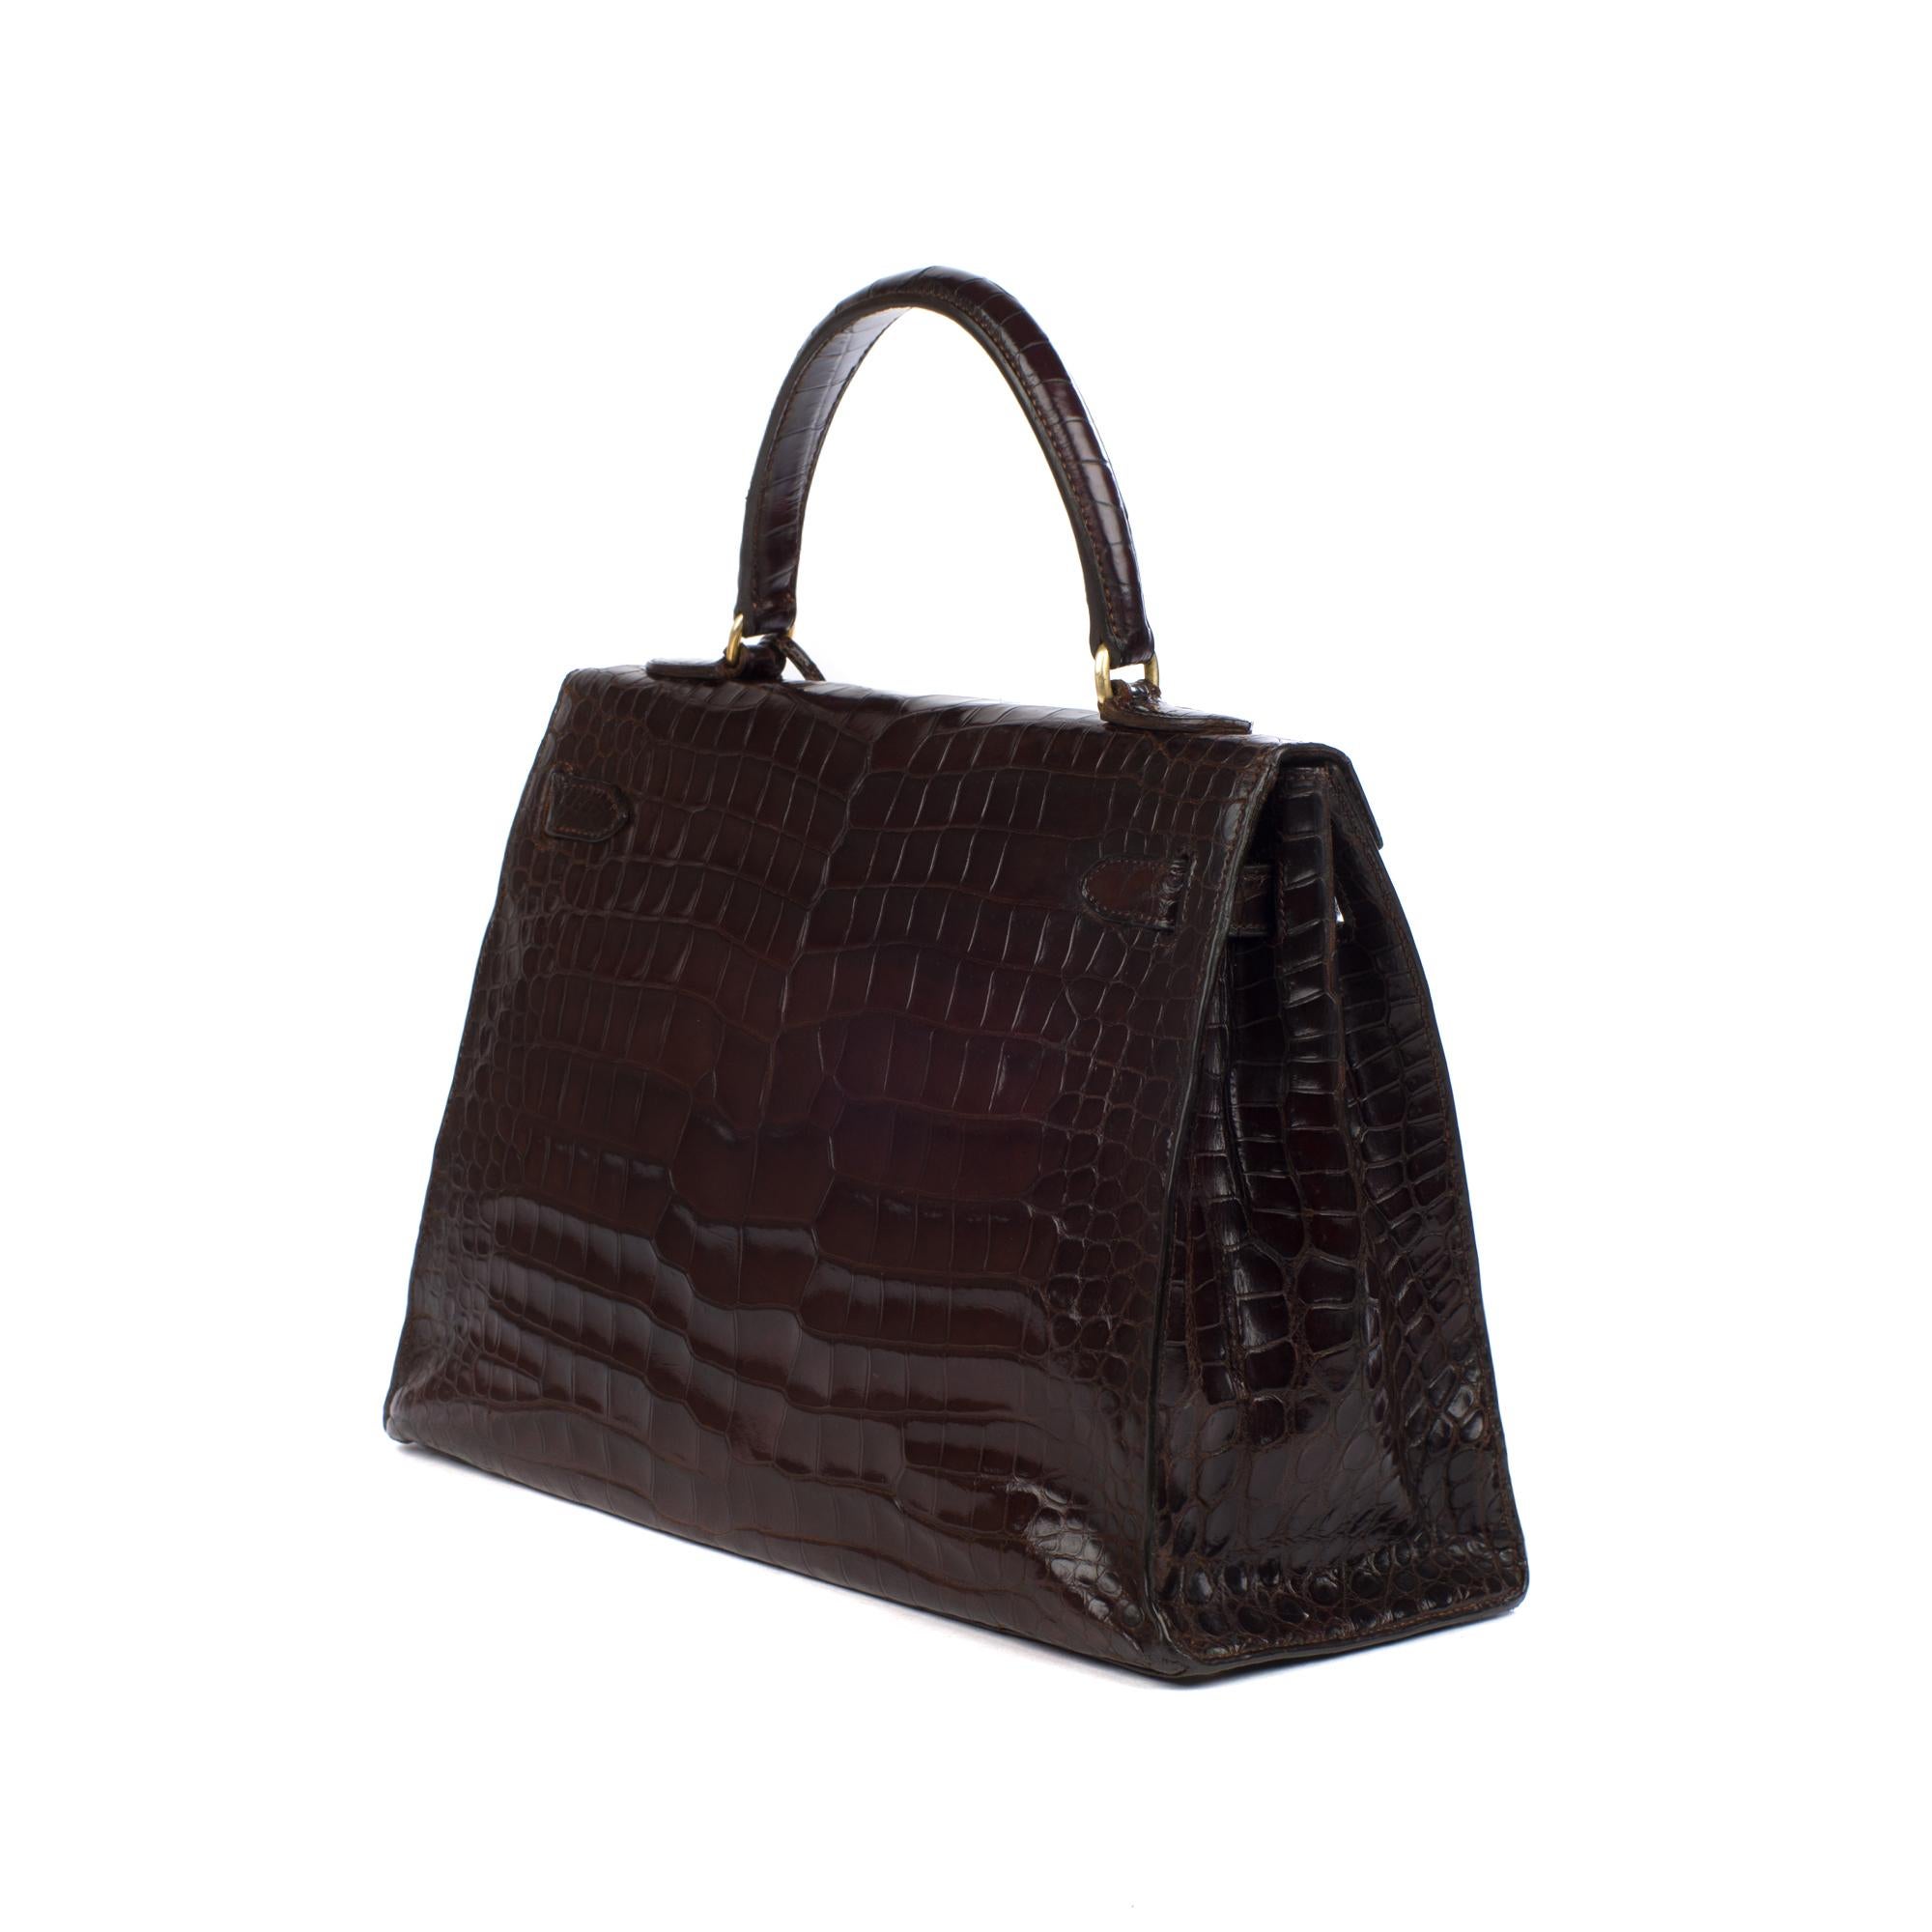 Hermès Kelly 32 sellier vintage bag in brown crocodile, gold hardware ! 2